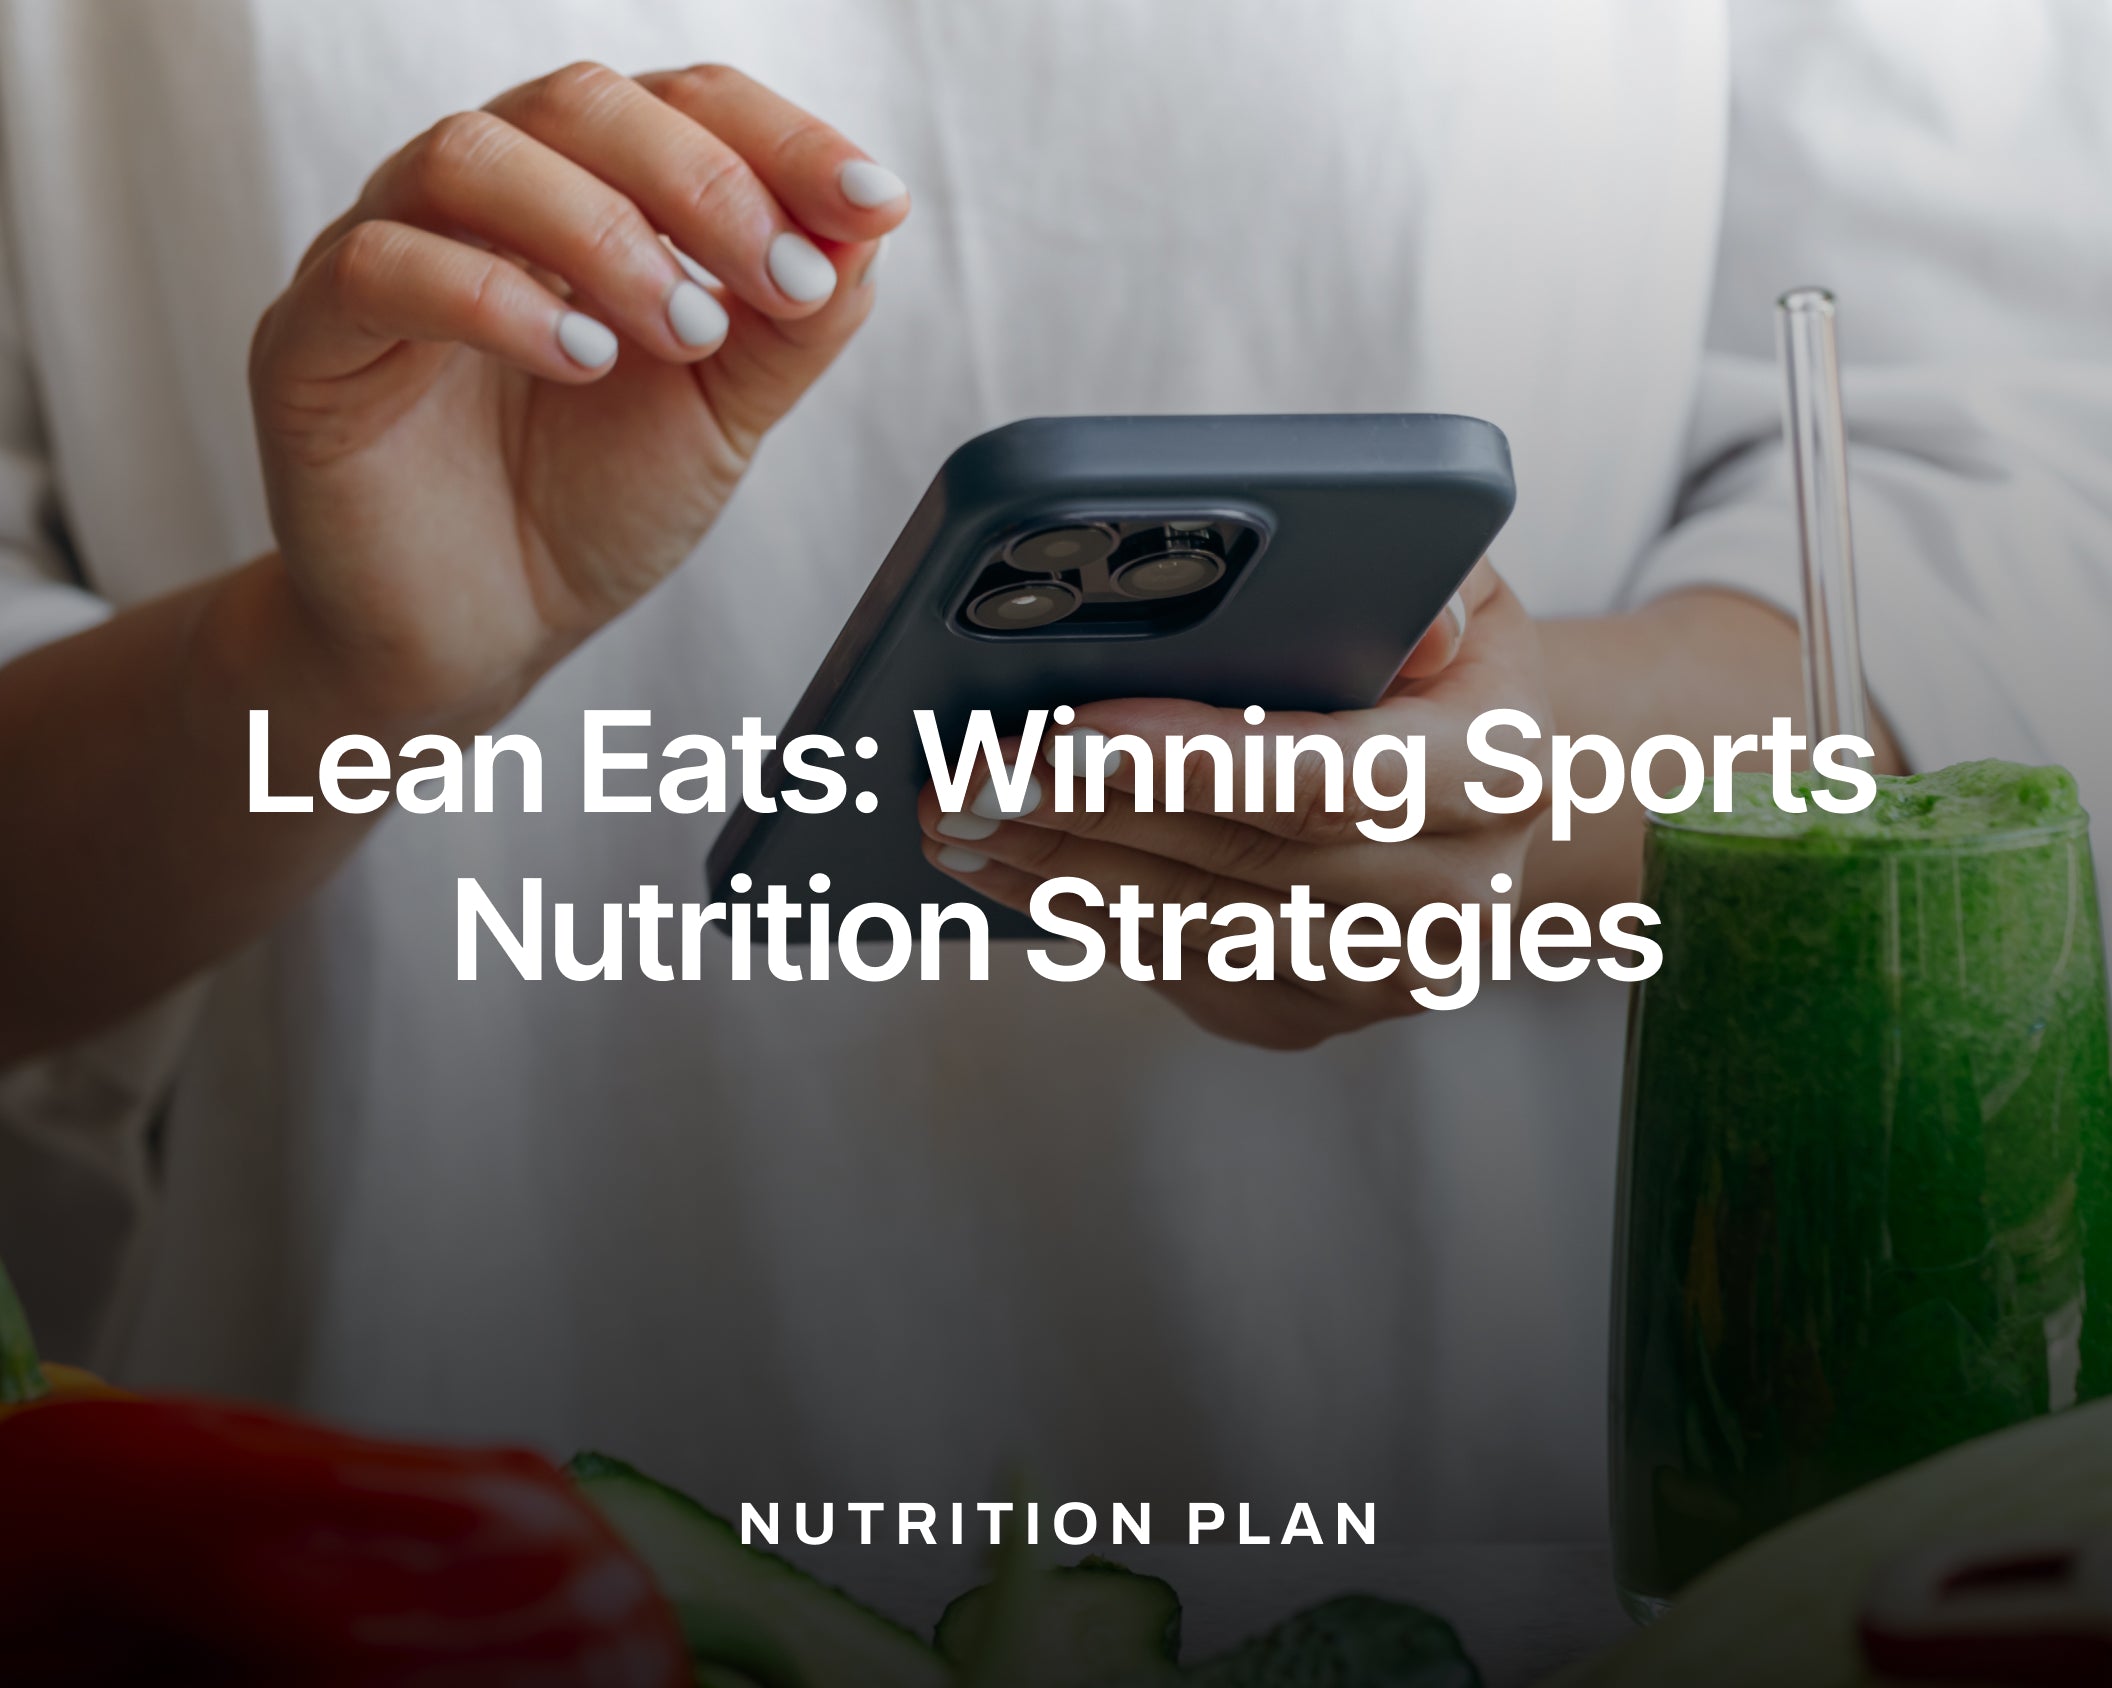 Lean Eats: Winning Sports Nutrition Strategies